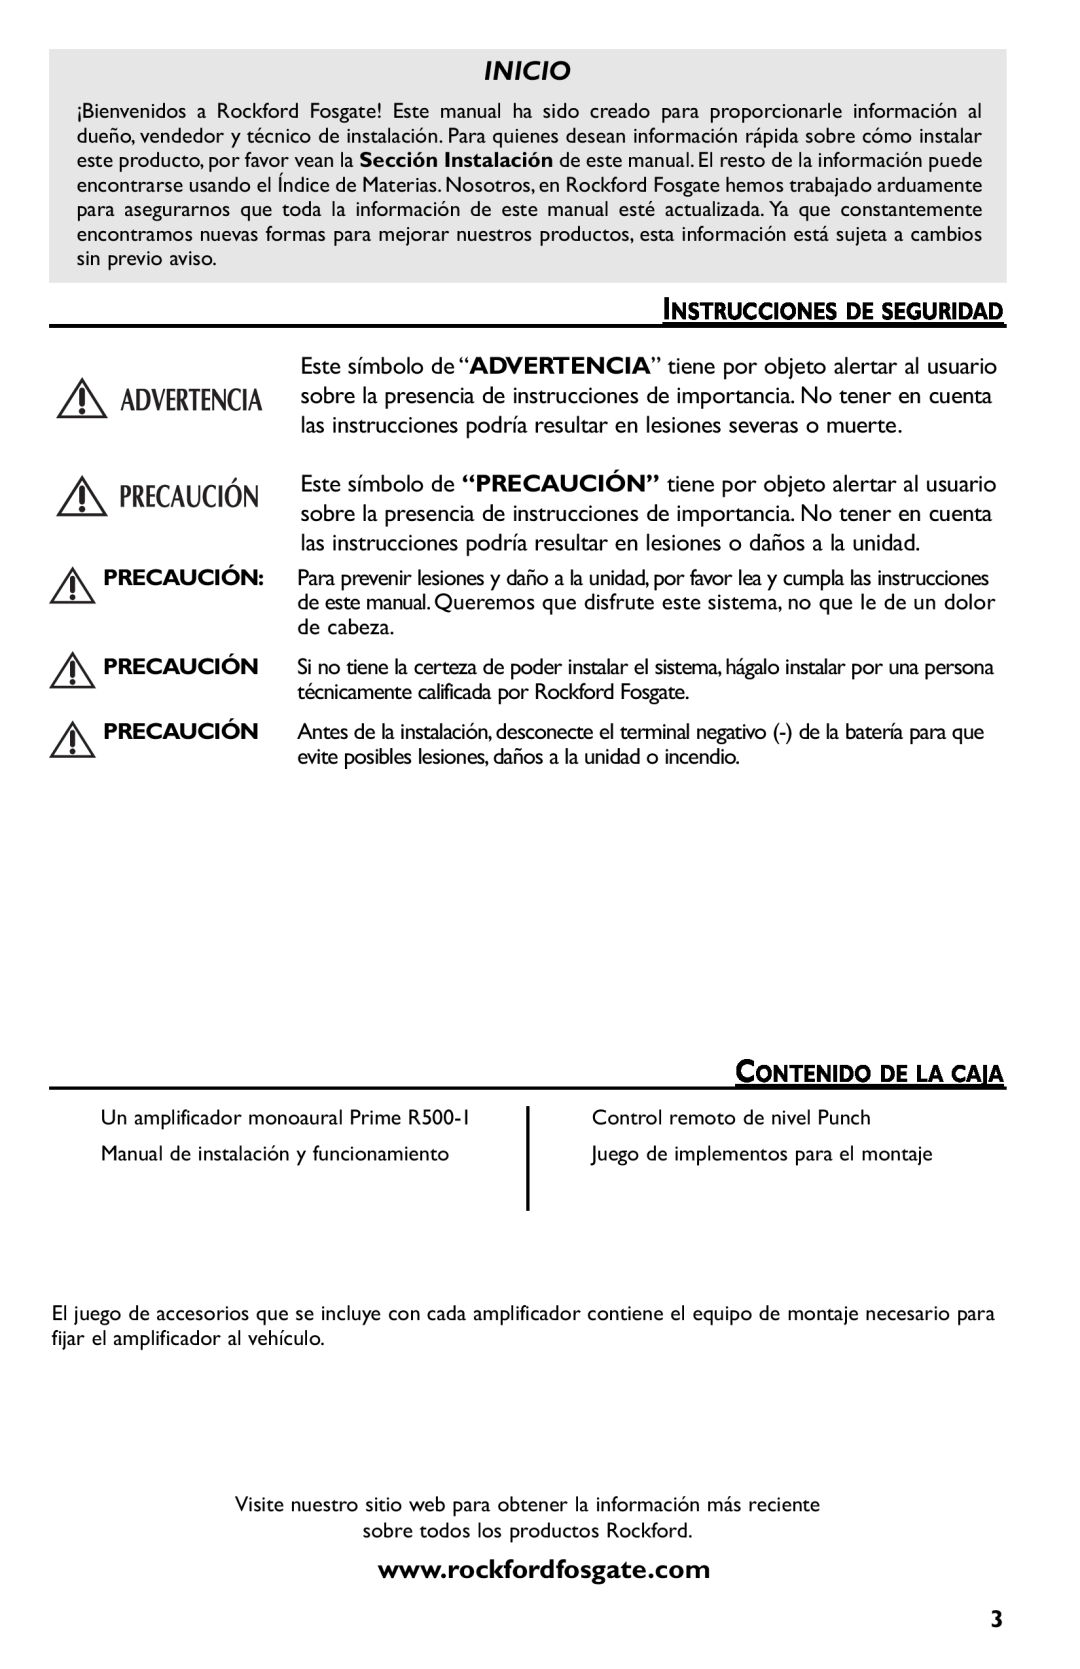 Rockford Fosgate R500-1 manual Inicio, Instrucciones De Seguridad, Contenido De La Caja 